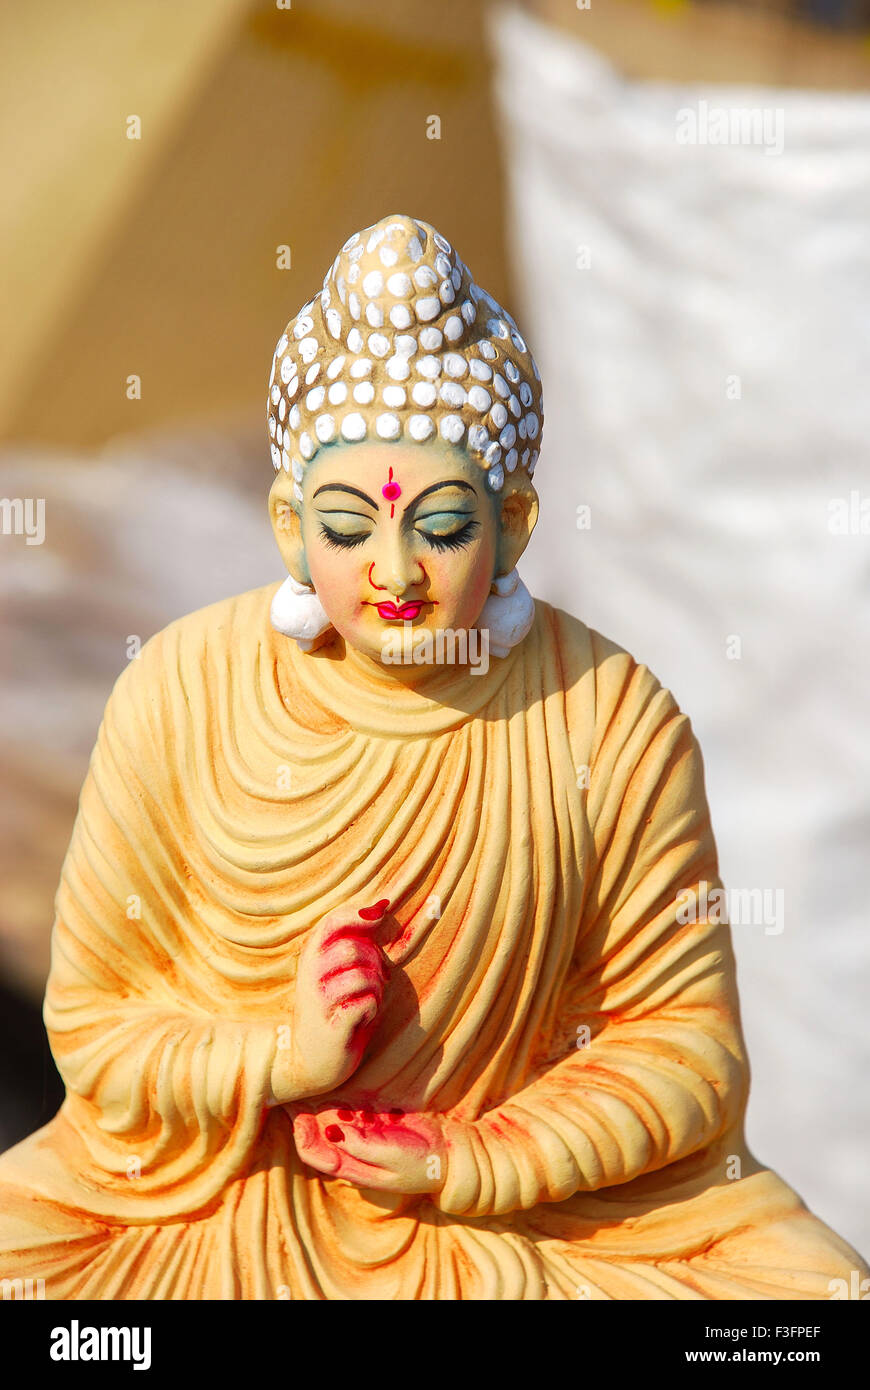 Lord Buddha idol, India, Asia Stock Photo